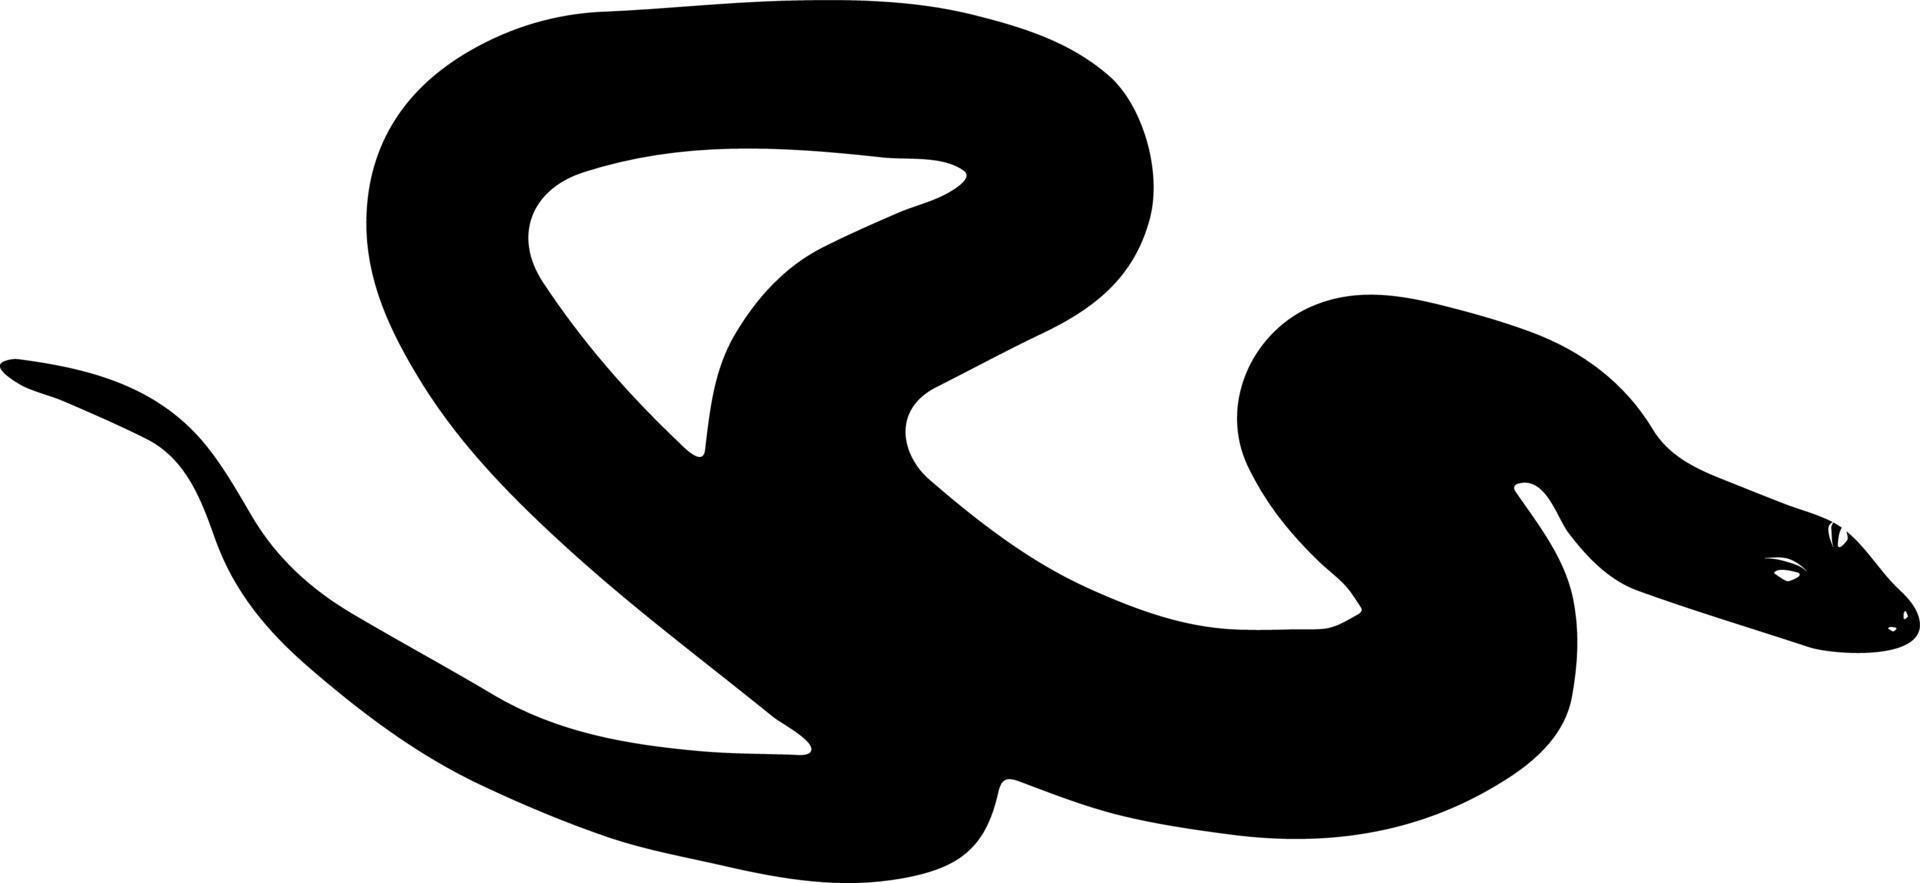 venimeux dessin animé serpent noir silhouette vecteur isolé nature sauvage eps10